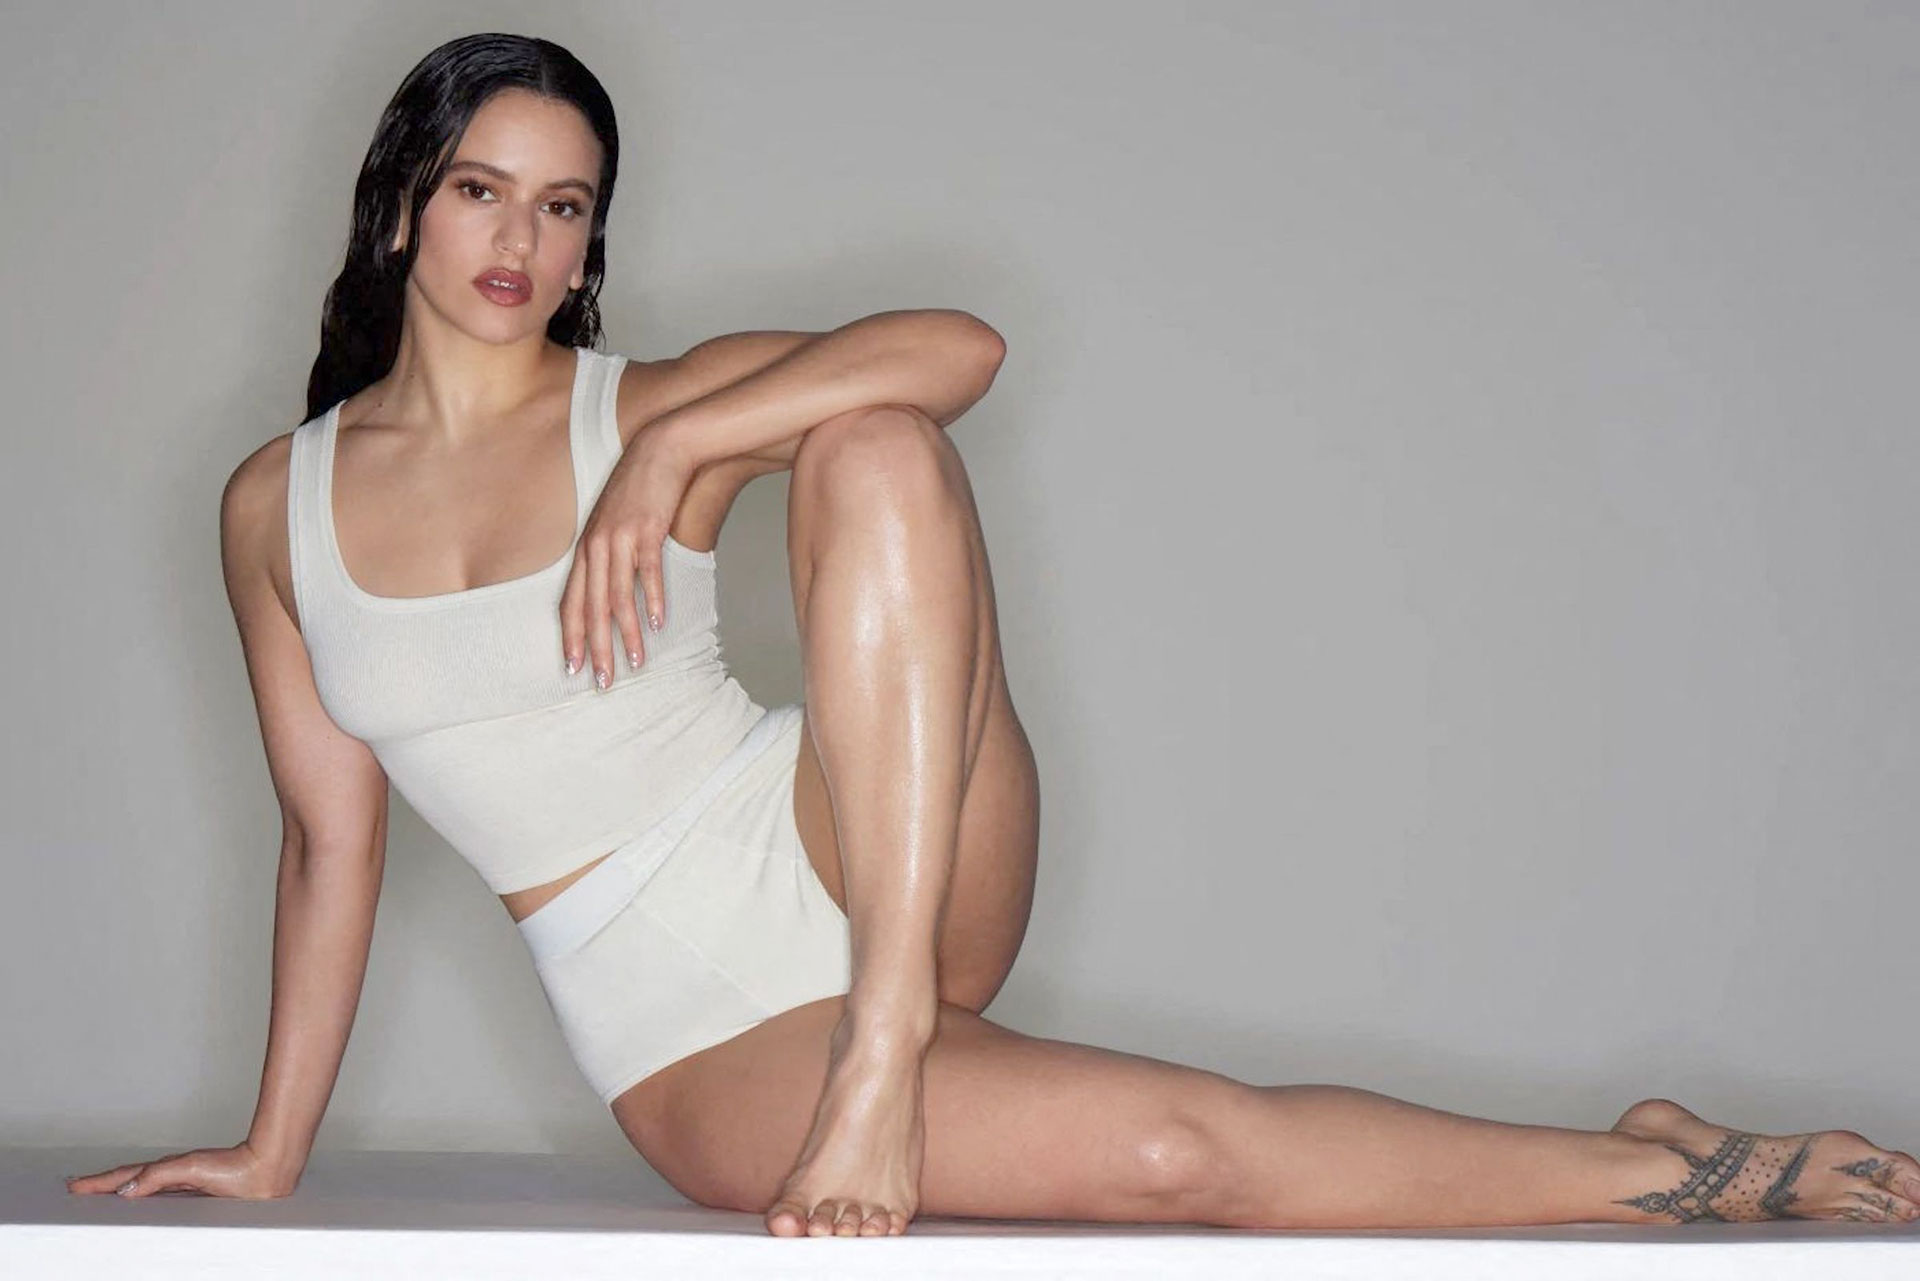 Rosalía es la nueva cara de "Skims", la firma de ropa interior de Kim Kardashian y realizó una producción fotográfica para la campaña en la posó con los distintos conjuntos